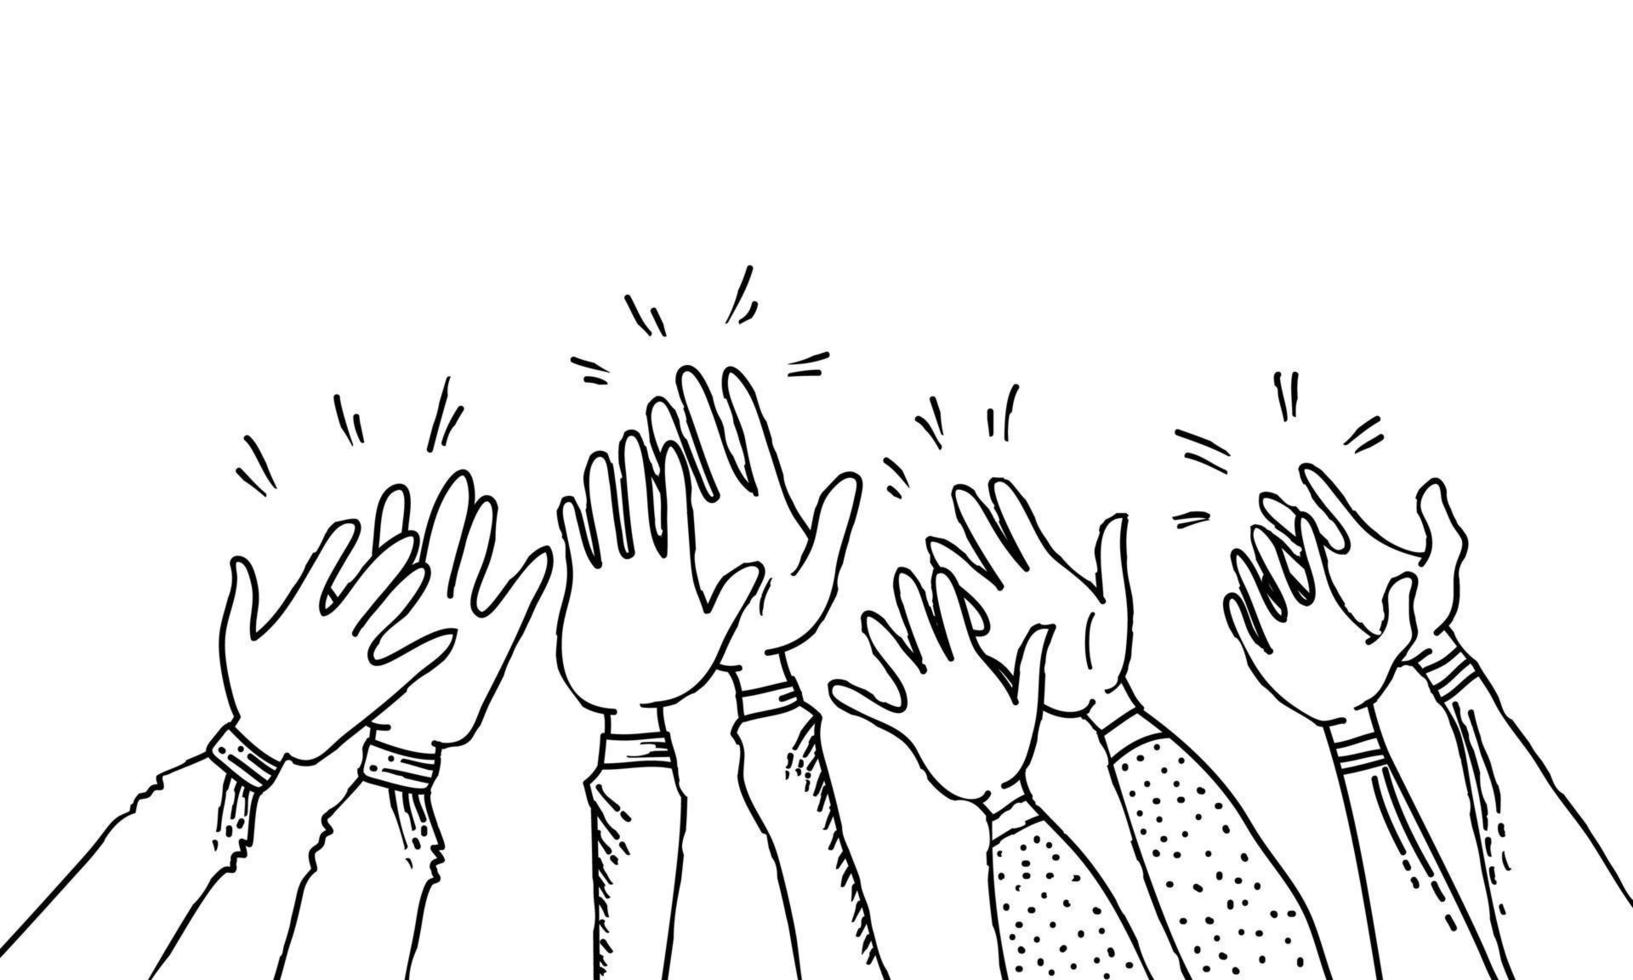 disegnato a mano con le mani in alto, applaudendo l'ovazione. gesto delle mani in stile doodle. illustrazione vettoriale